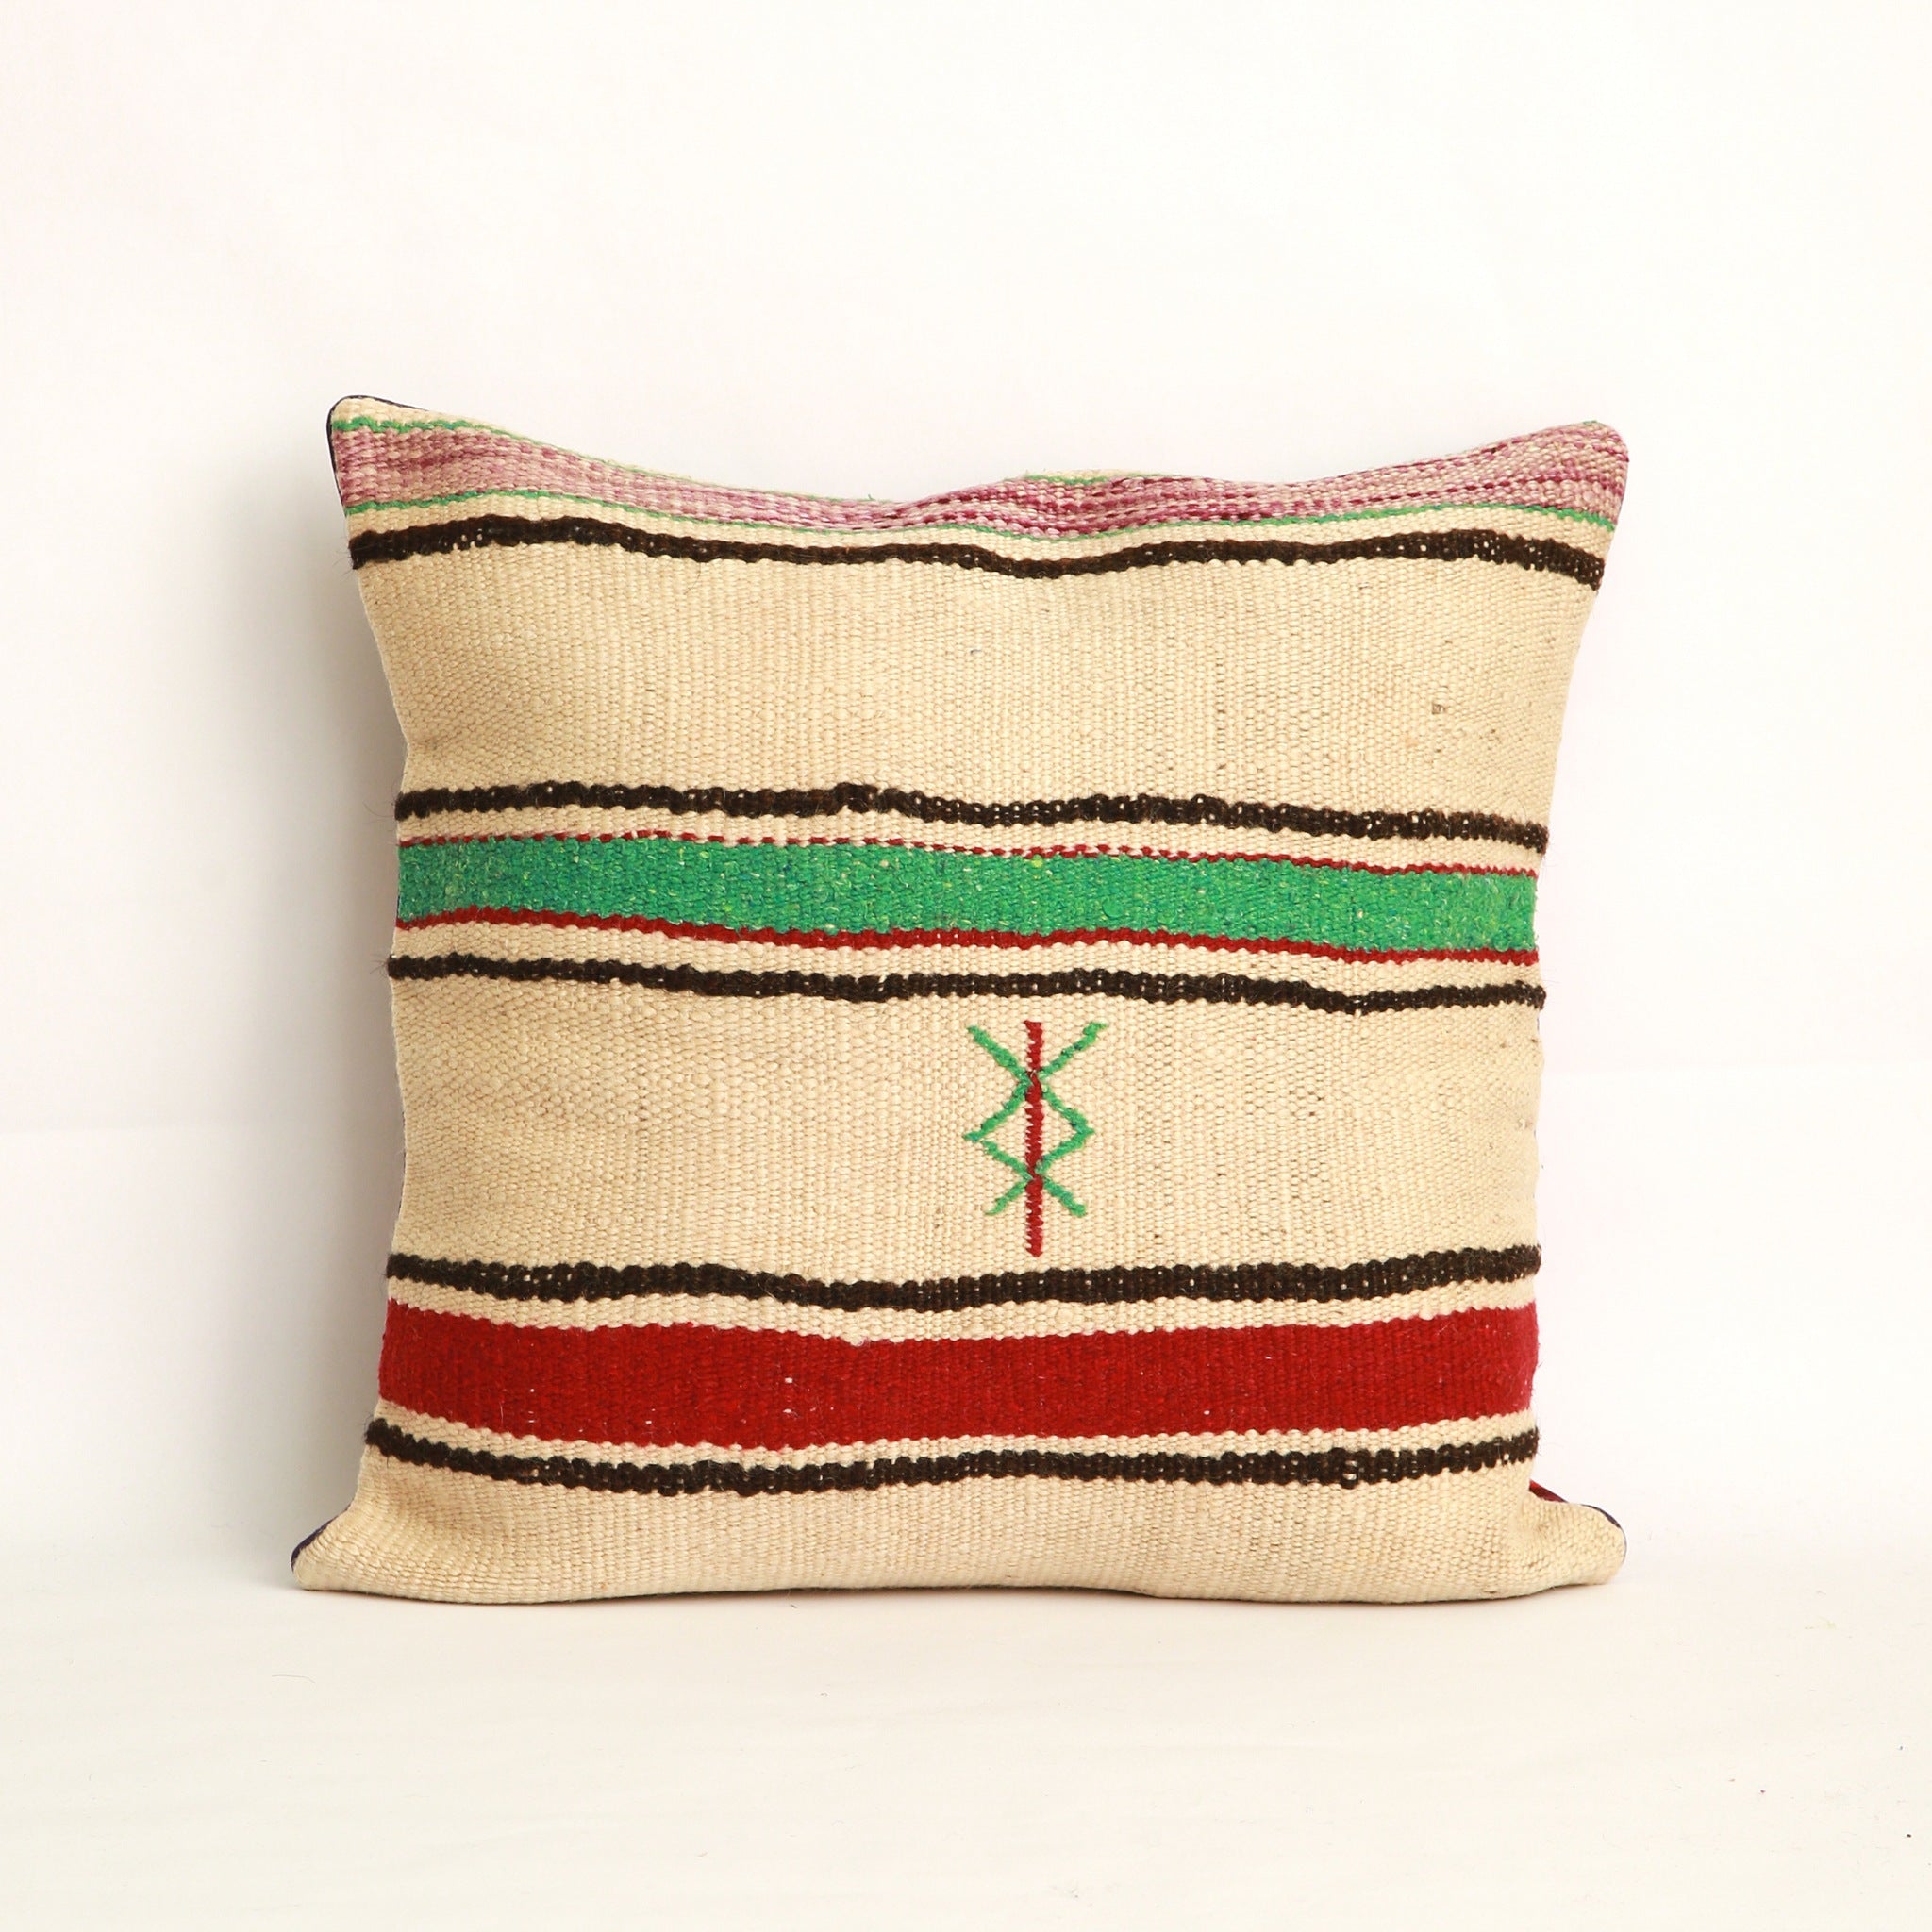 Cuscino realizzato con due tessuti diversi, uno da ogni lato, da questo lato appare  una coperta in lana vintage a righe  nere verde acqua e bordeaux con un simbolo Amazigh (berbero) ricamato a mano